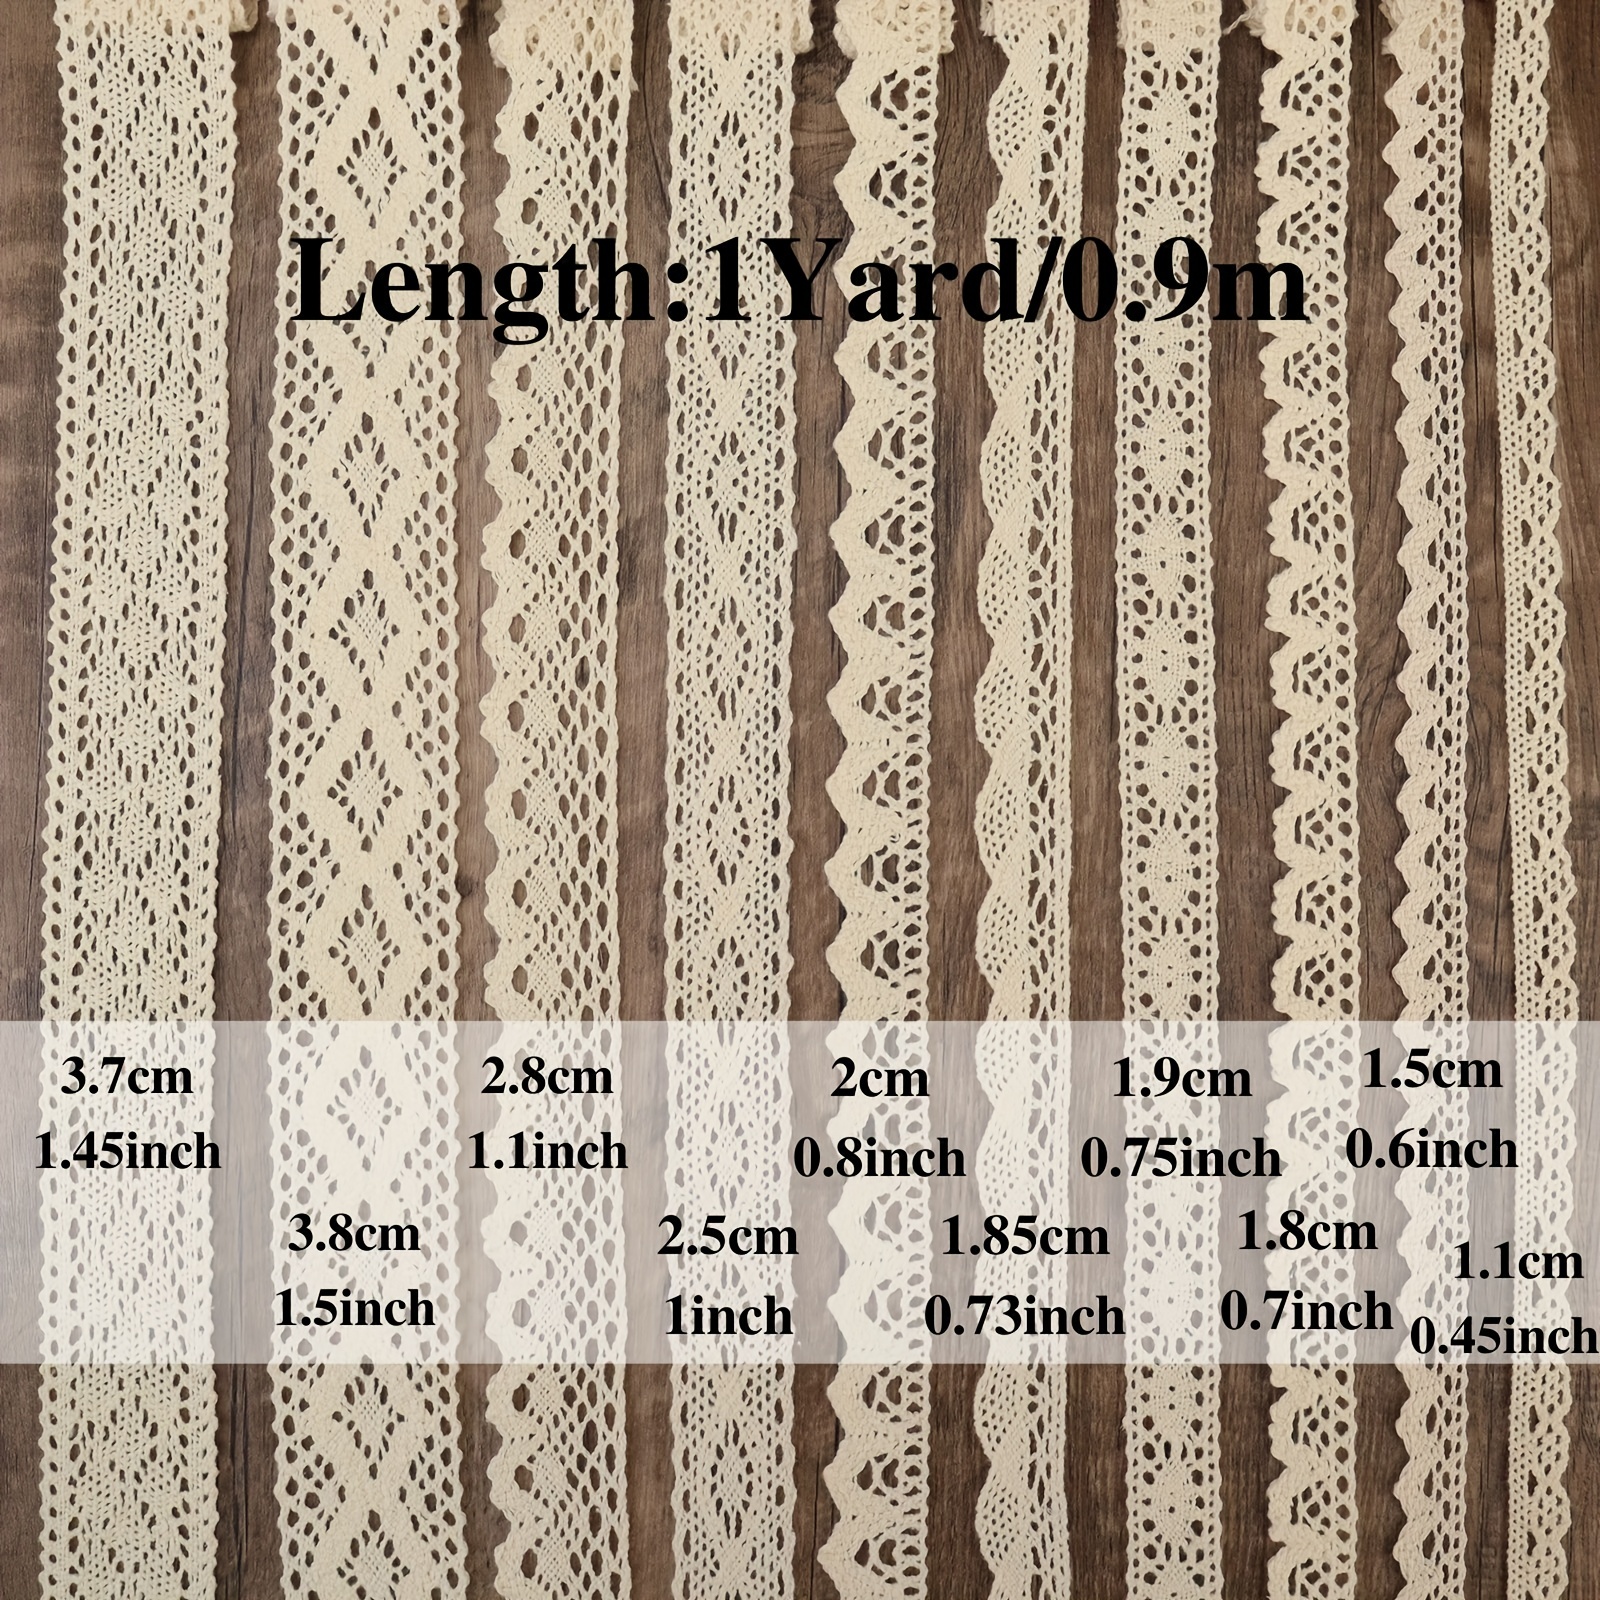  IDONGCAI Cotton Lace Ribbon for Crafts-Sewing Lace